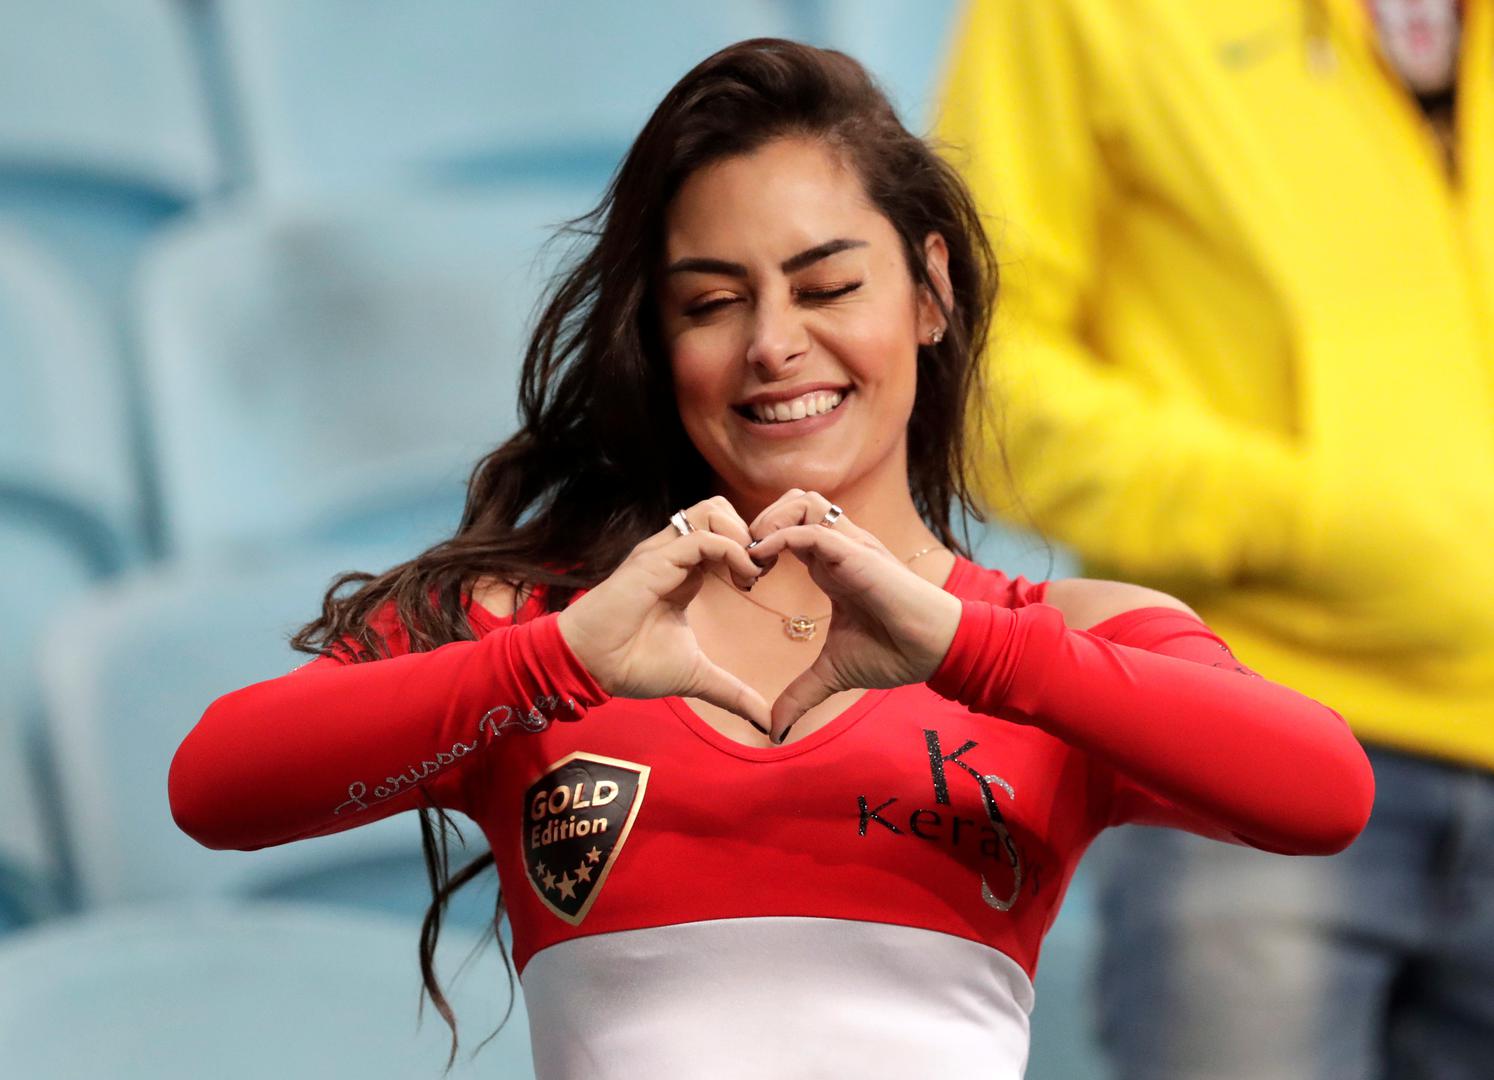 "Hvala Paragvaju. Volim boje svoje zemlje i volim nogomet. Preplavile su me emocije", rekla je lijepa navijačica.

